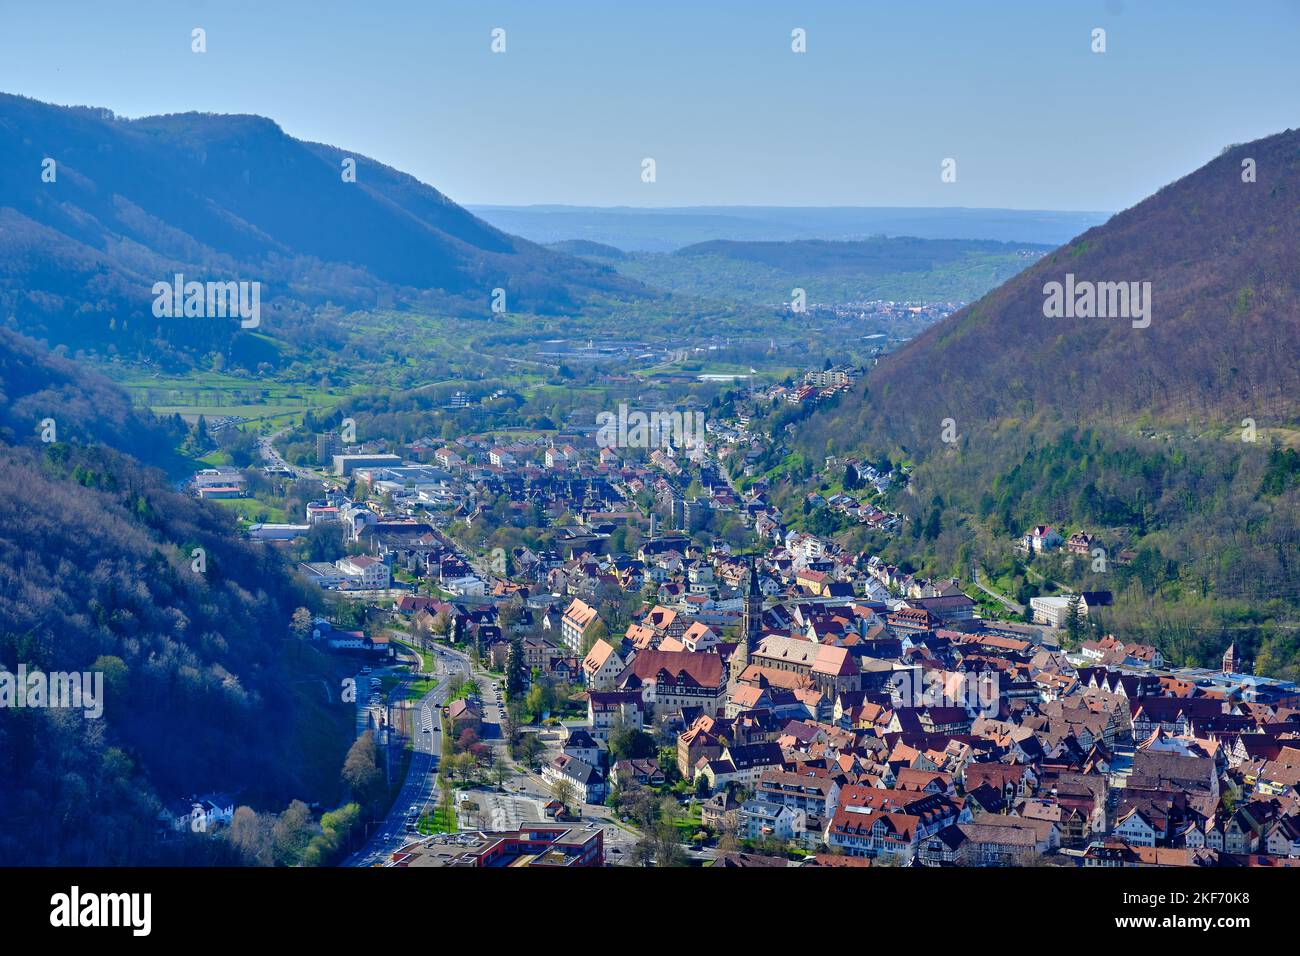 Vista desde la Capilla de Miguel sobre la ciudad de Bad Urach, Suabia Alb, Baden-Württemberg, Alemania. Foto de stock